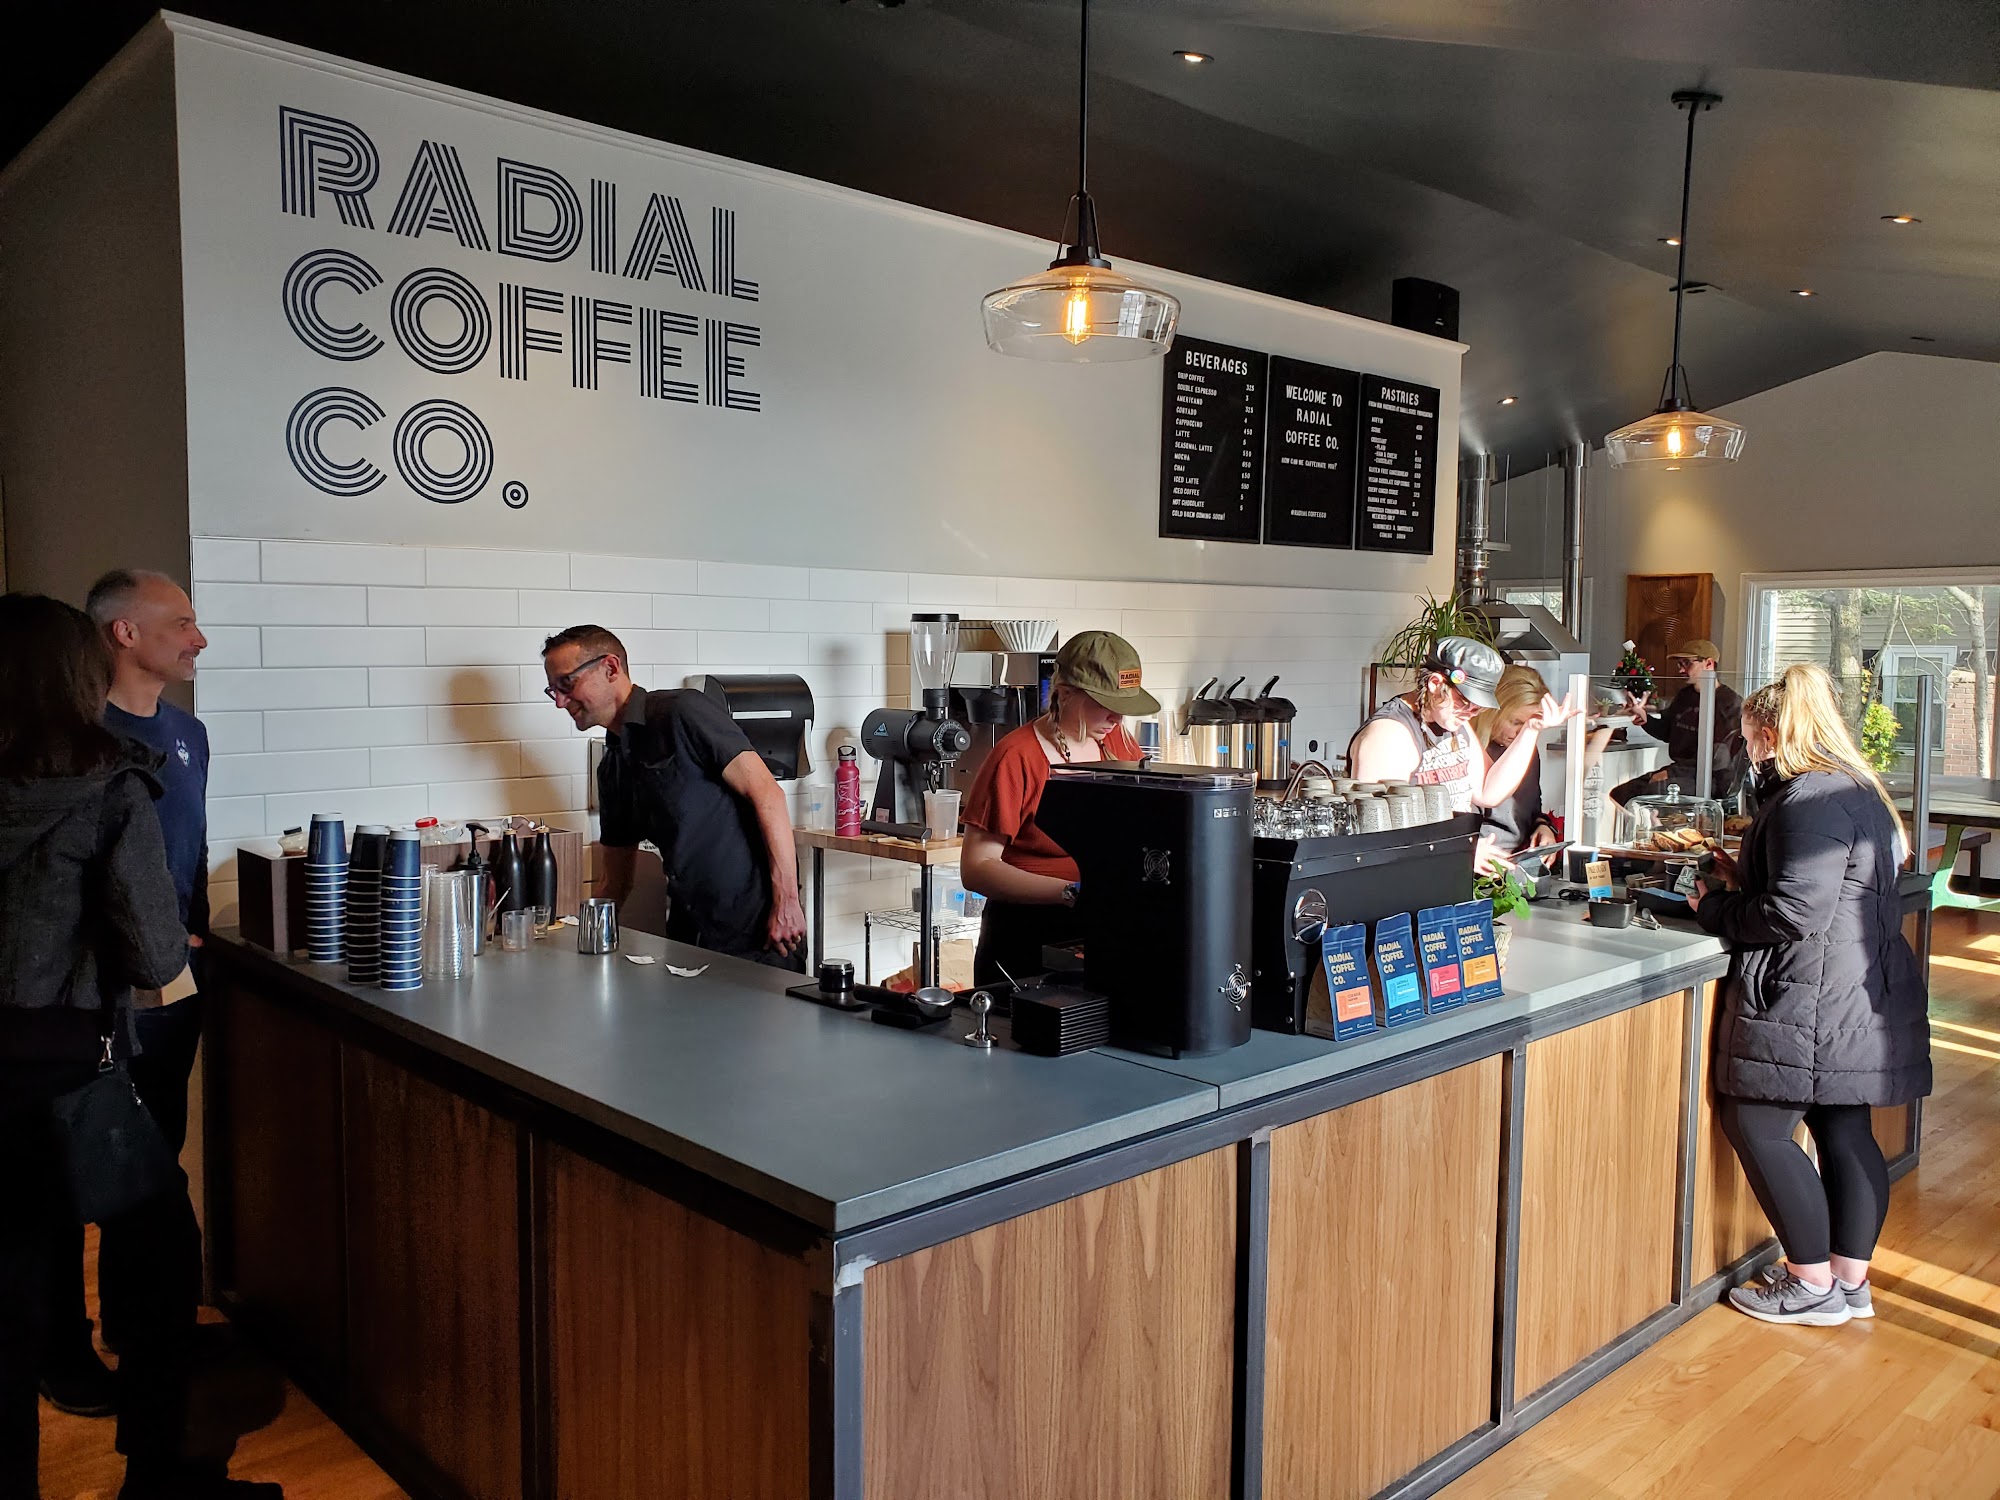 Radial Coffee Company